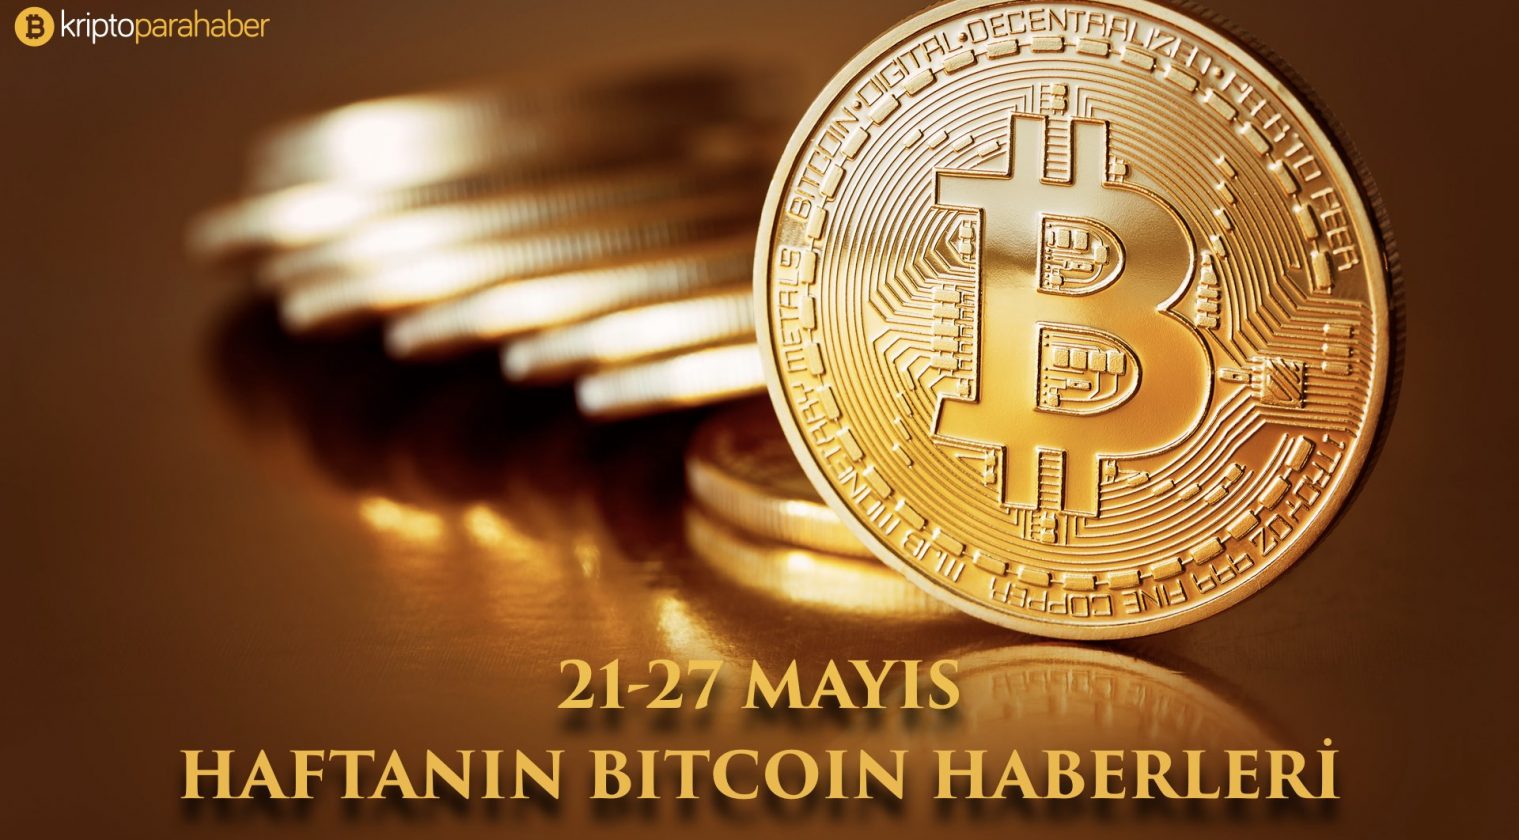 21-27 Mayıs: Haftanın Bitcoin haberleri